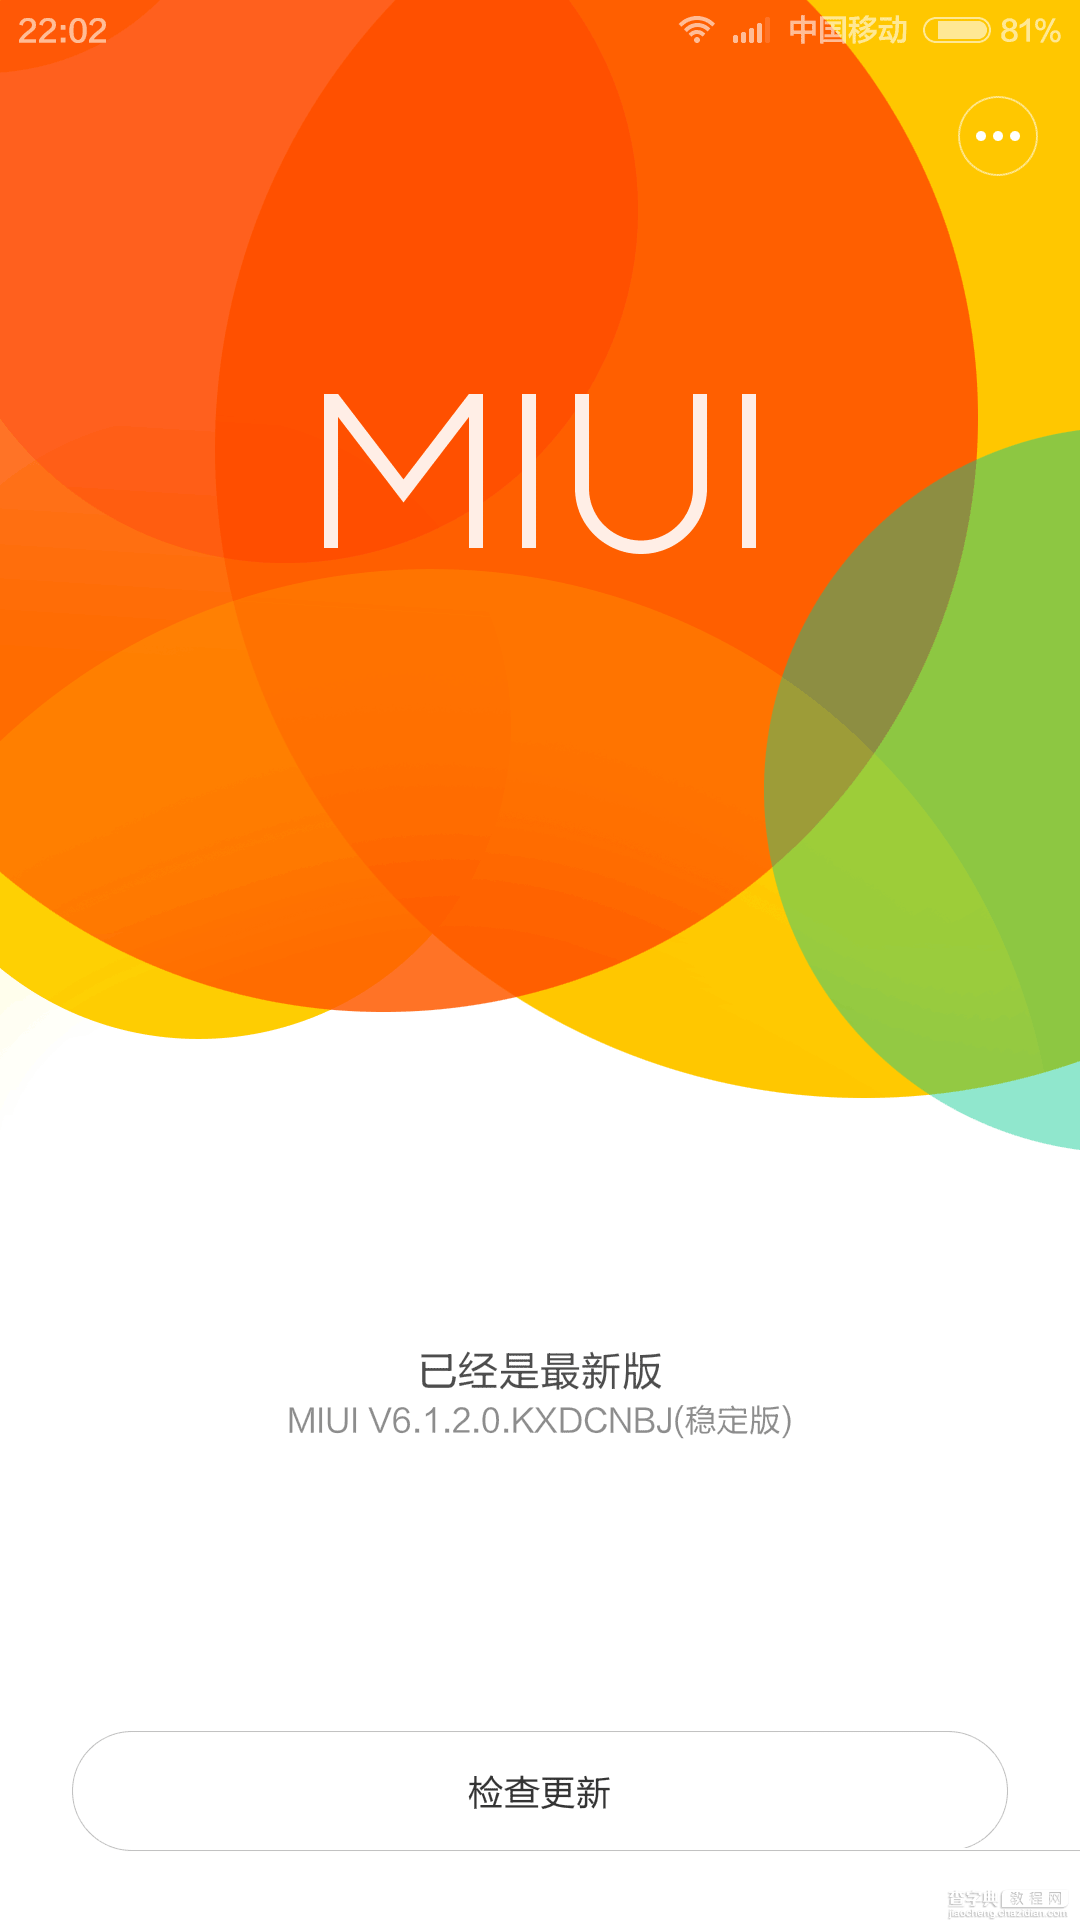 小米4升级miui6后内存小于1.5G怎么解决？1